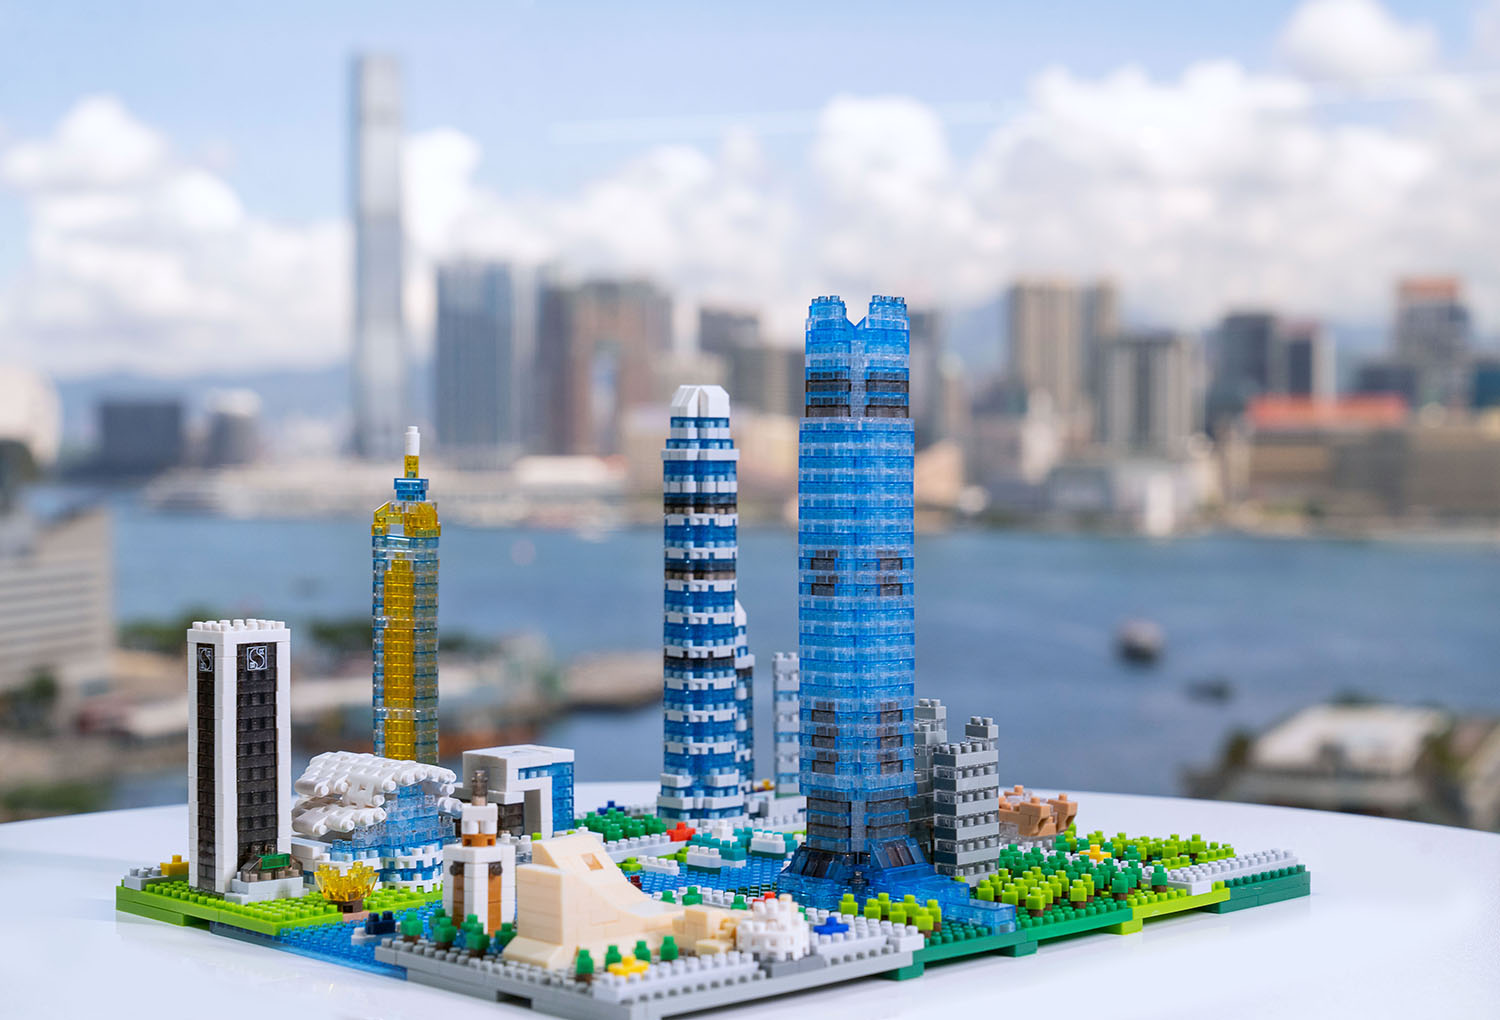 推出「sky100 x nanoblock香港天際線模型」